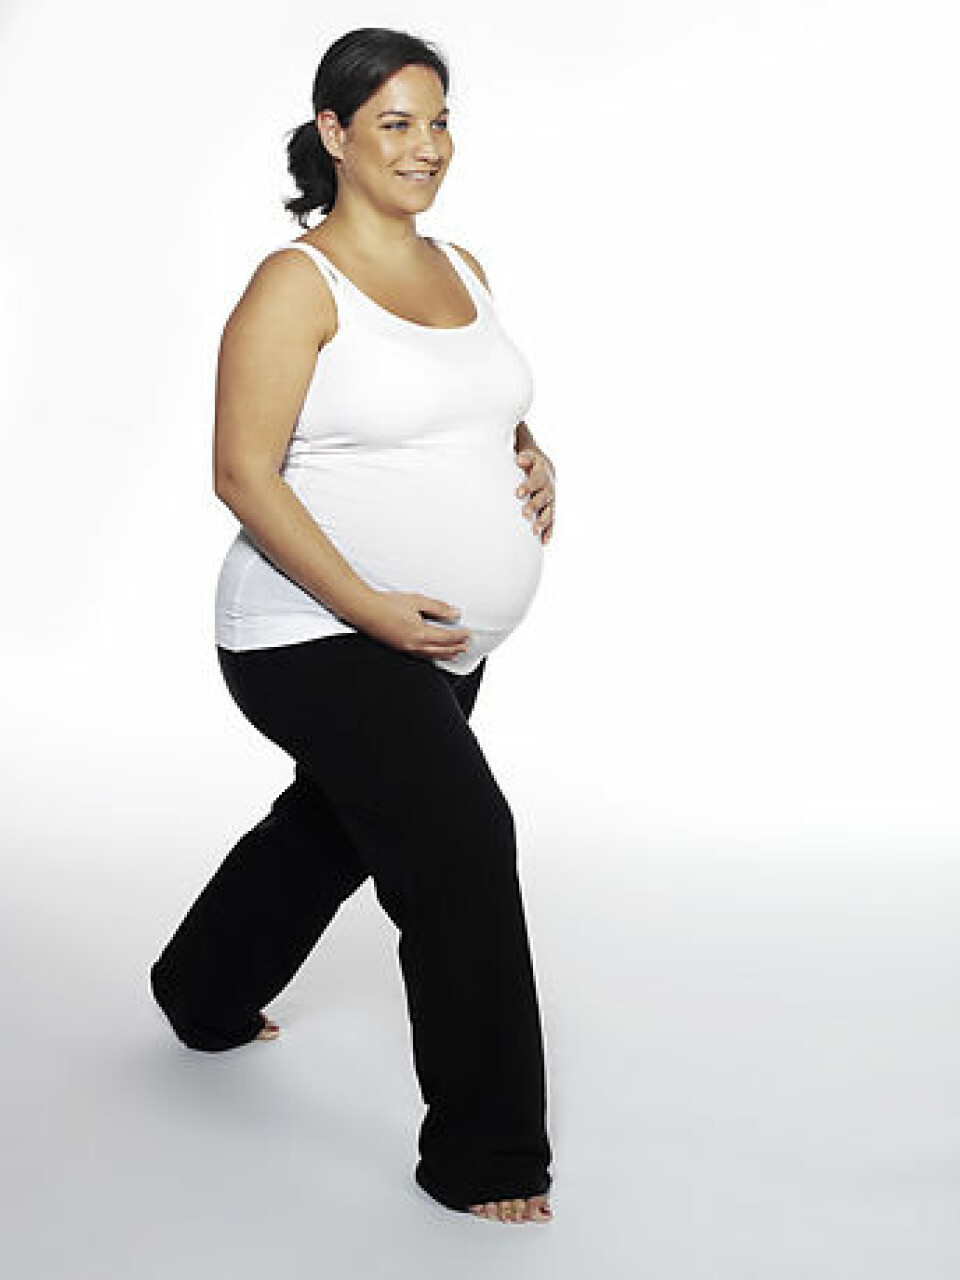 'Du kan gjøre enkle styrkeøvelser med moderat intensitet selv om du er gravid. (Foto: www.colorbox.no)'